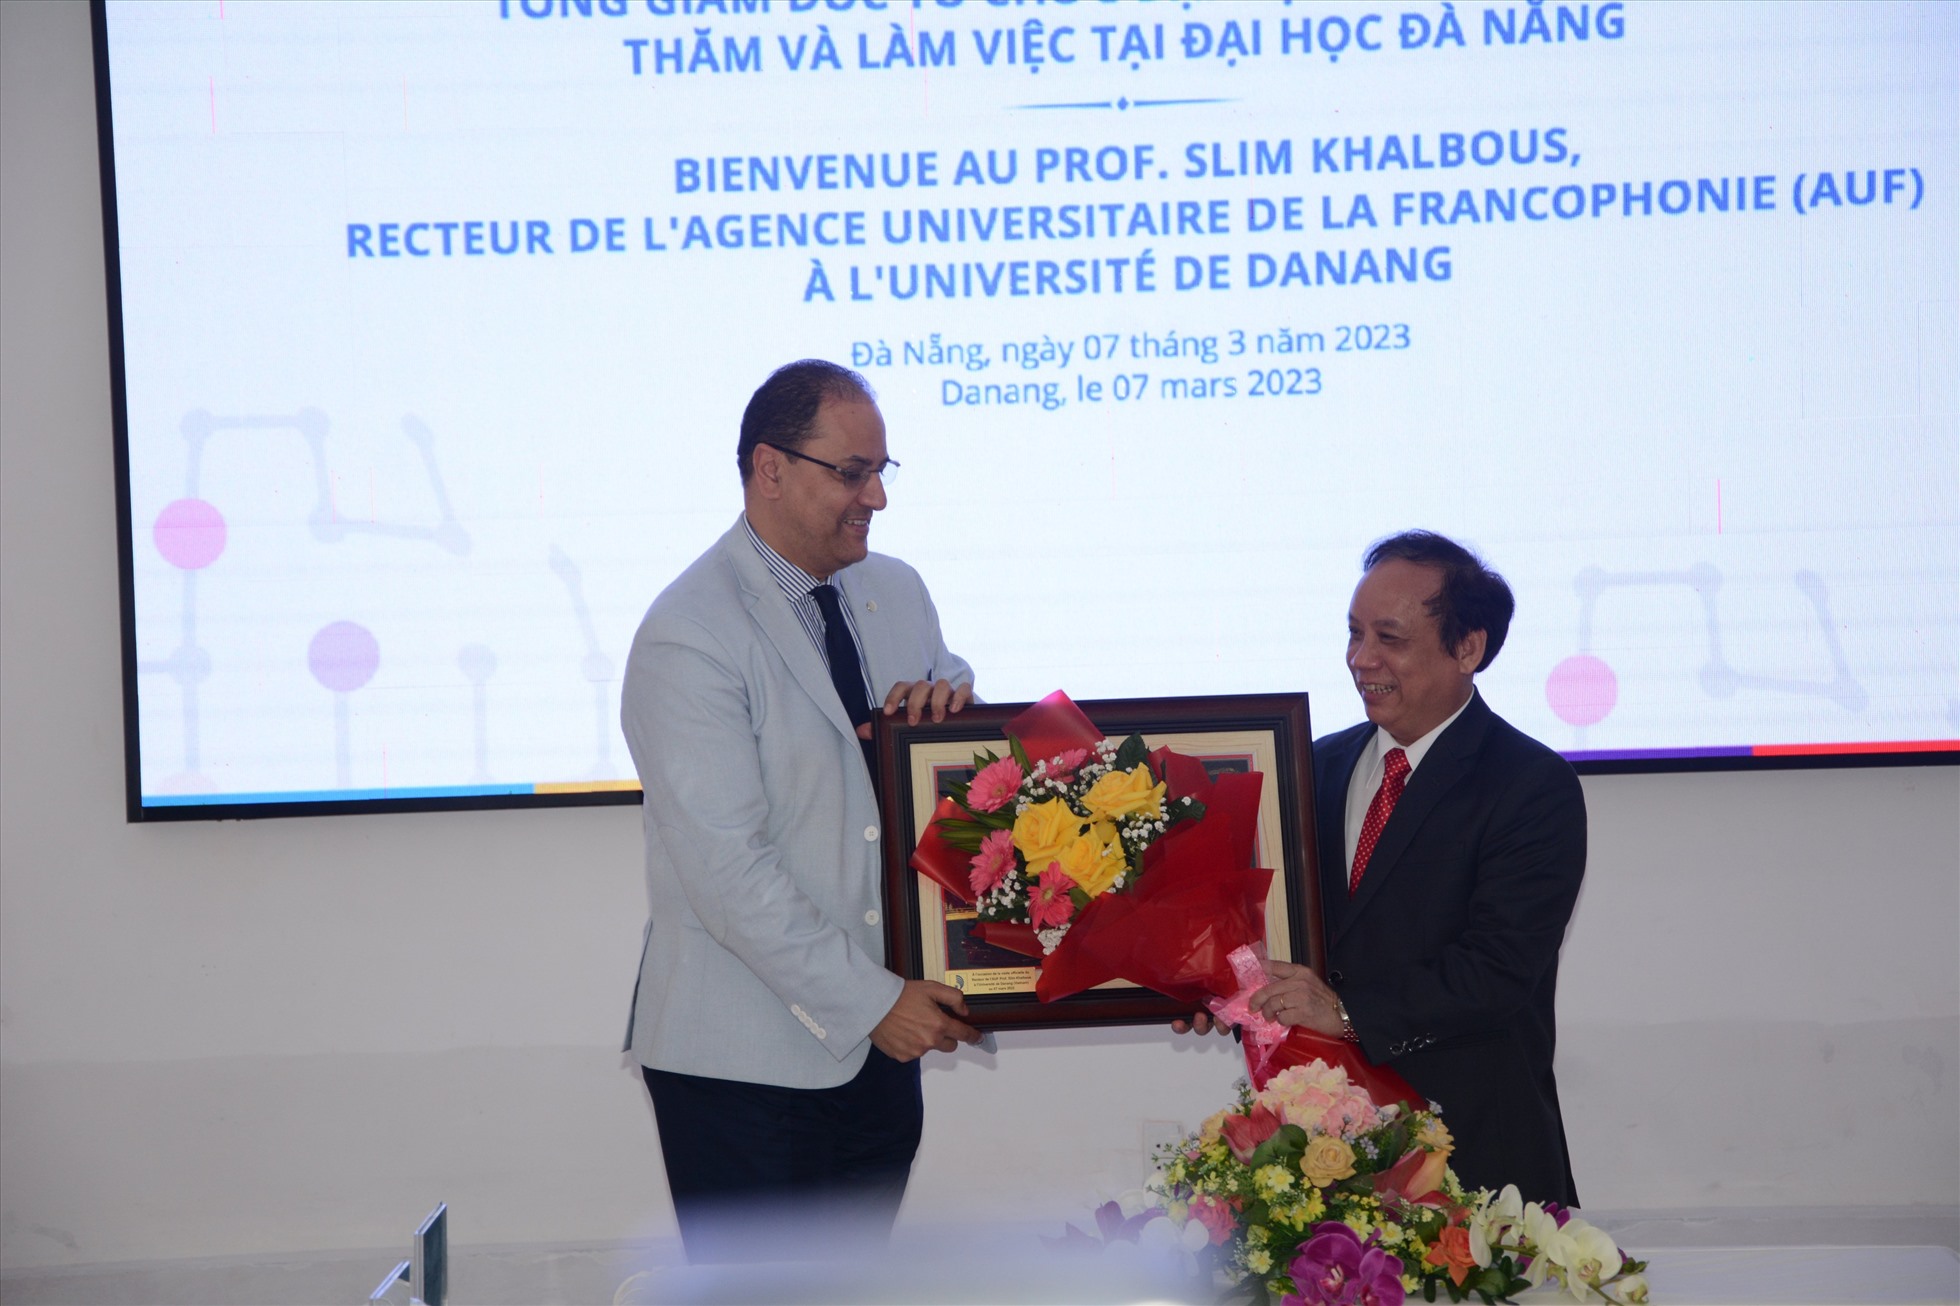 Phái đoàn cấp cao của Tổ chức Đại học Pháp ngữ làm việc với Đại học Đà Nẵng. Ảnh: Văn Dũng